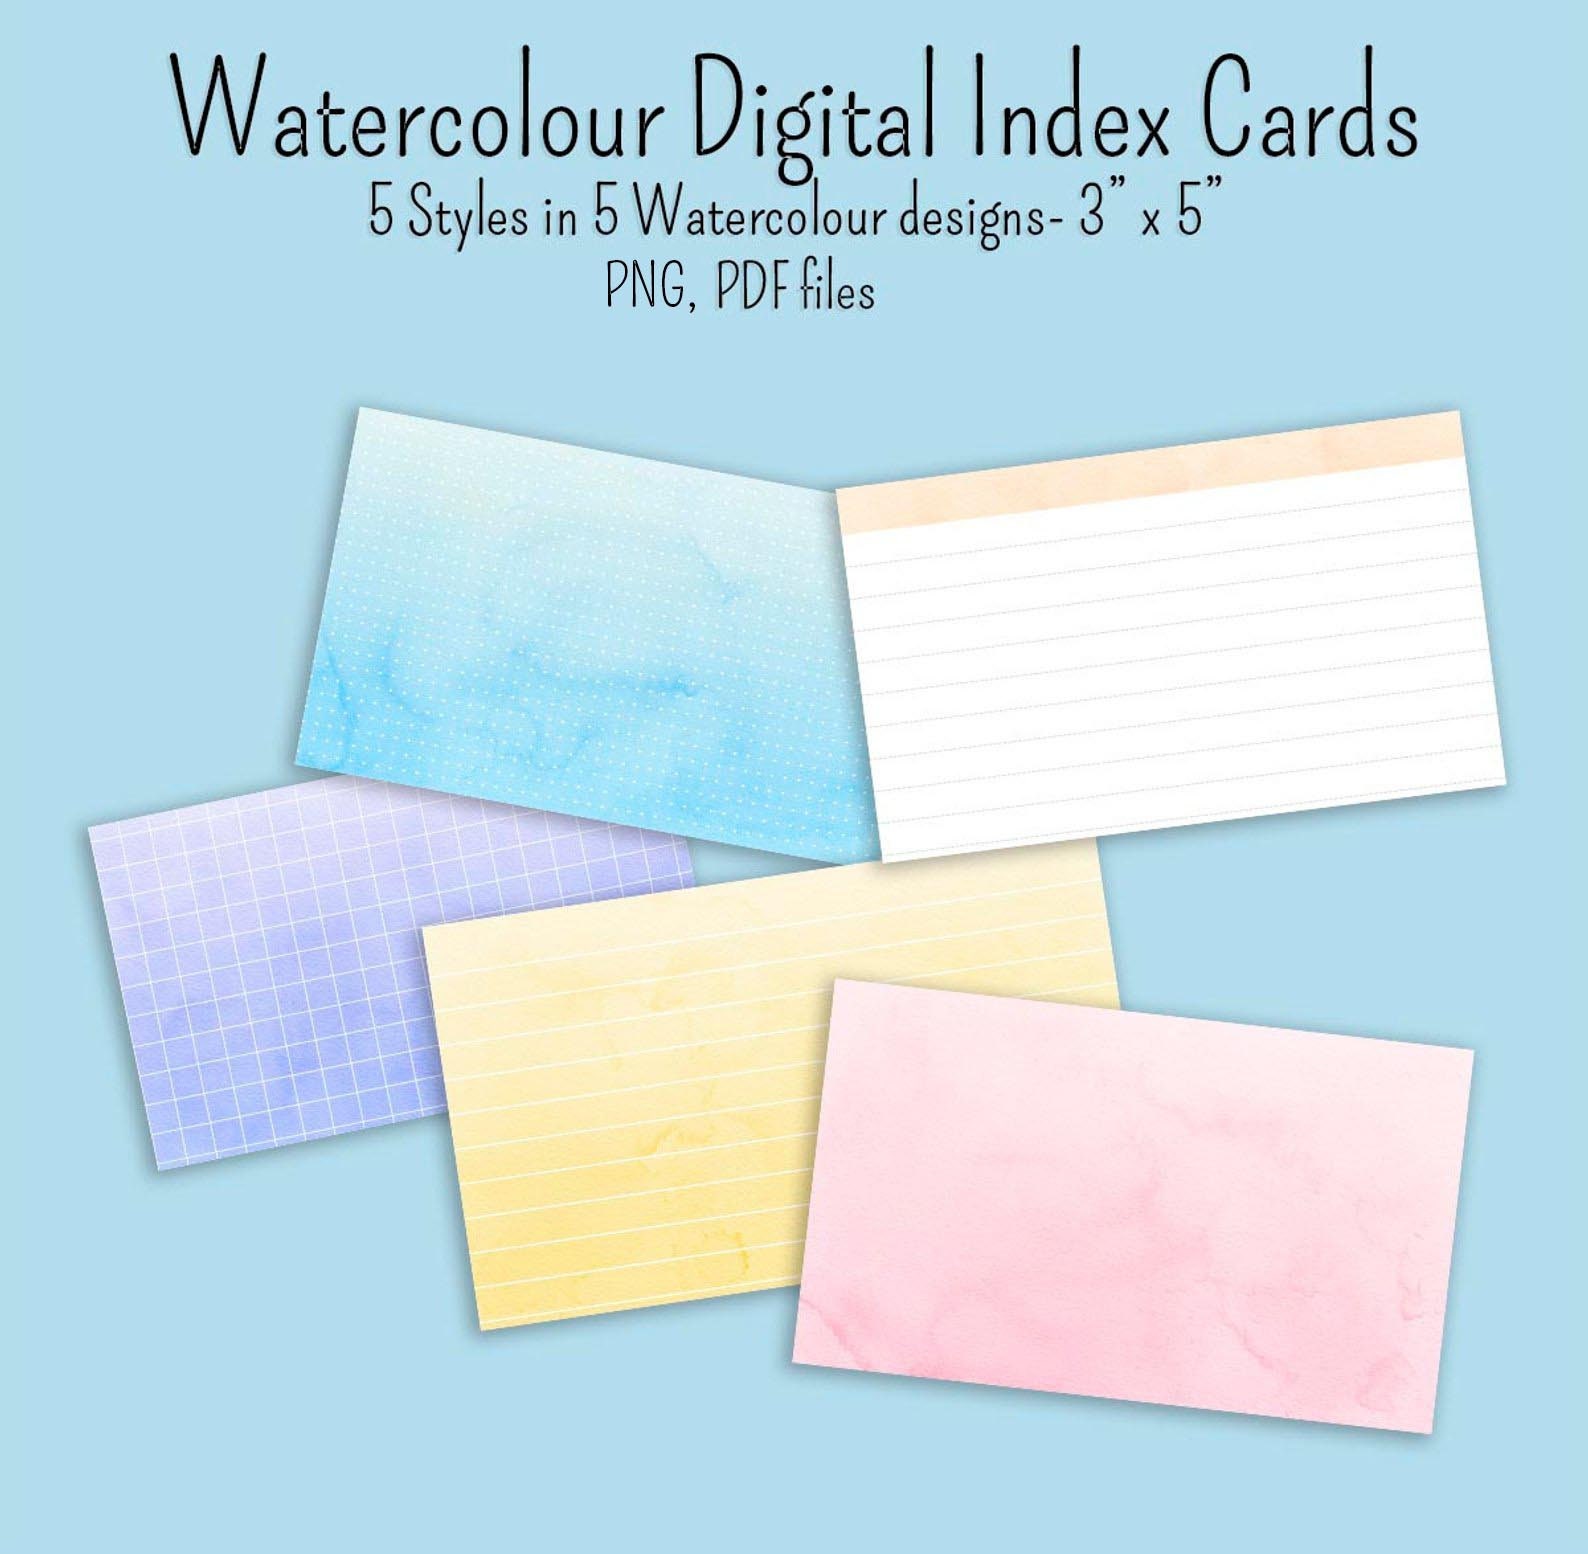 Printable 4x6 Index Cards, Editable Index Card, Blank Flashcards, Digital  Index Cards, Printable Note Cards, Editable PDF Index Card 